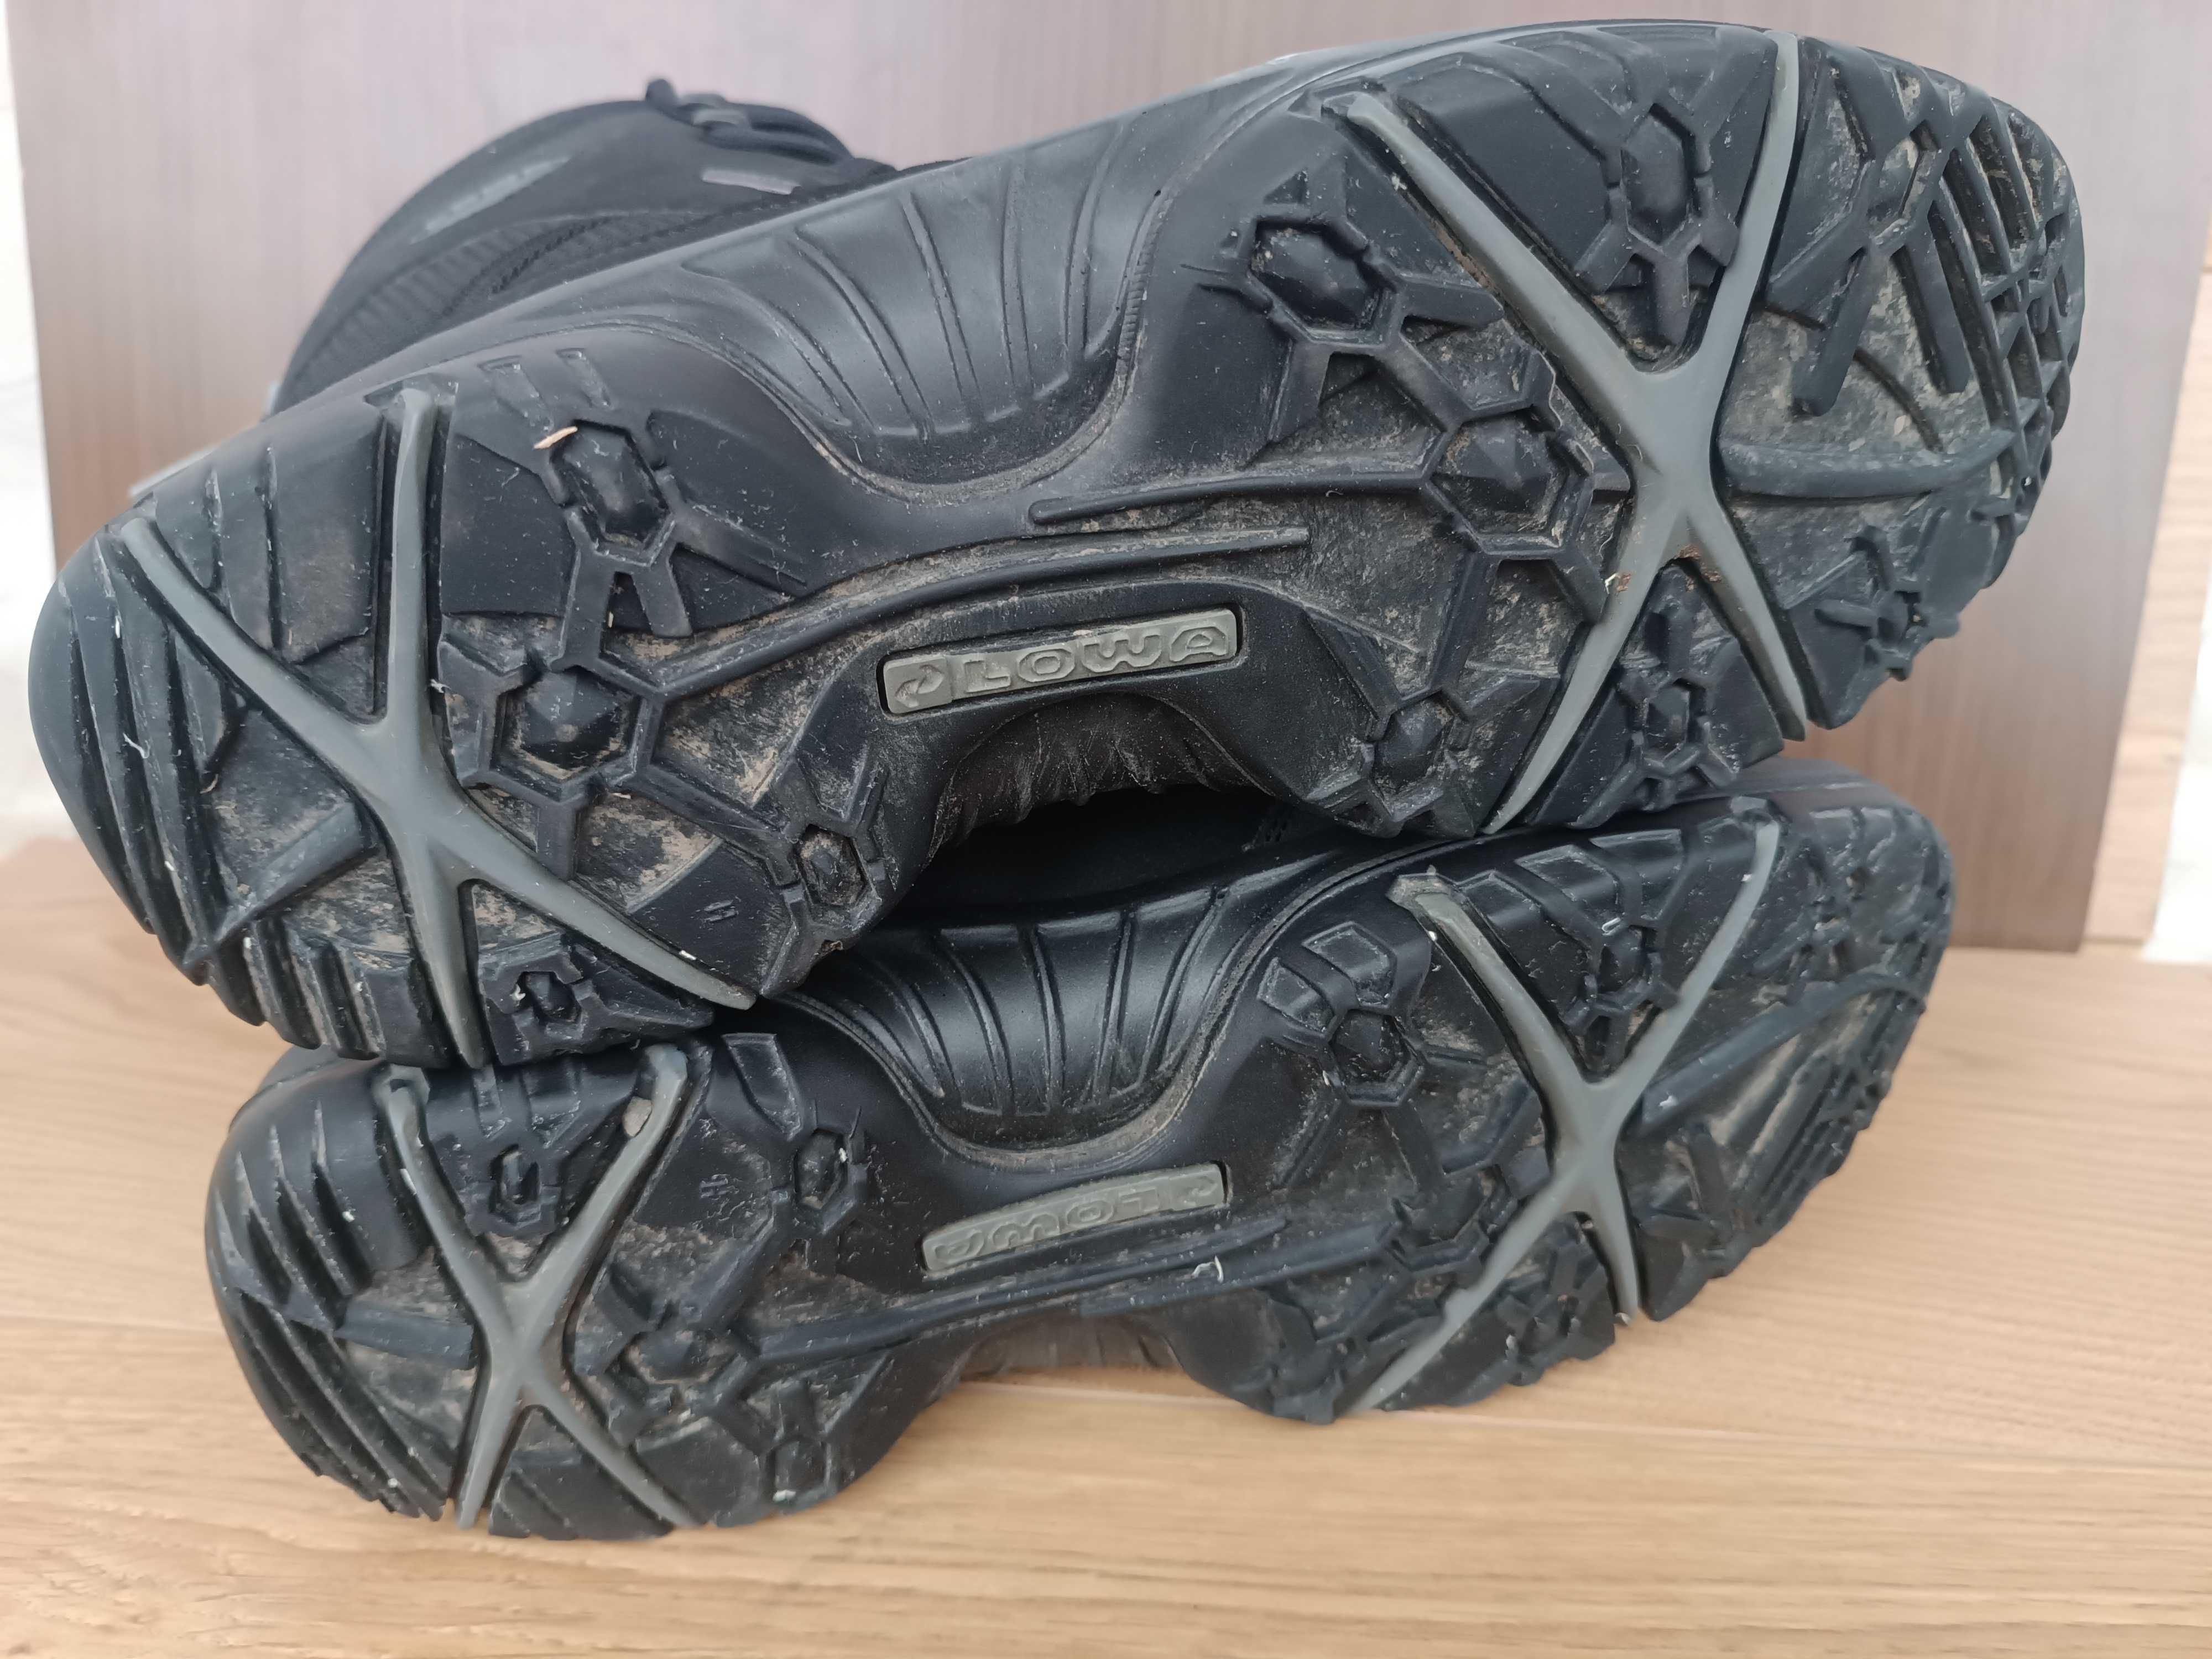 Замшевые ботинки Lowa Trident Gtx goreTex Мех 44.5 28.7 см берцы